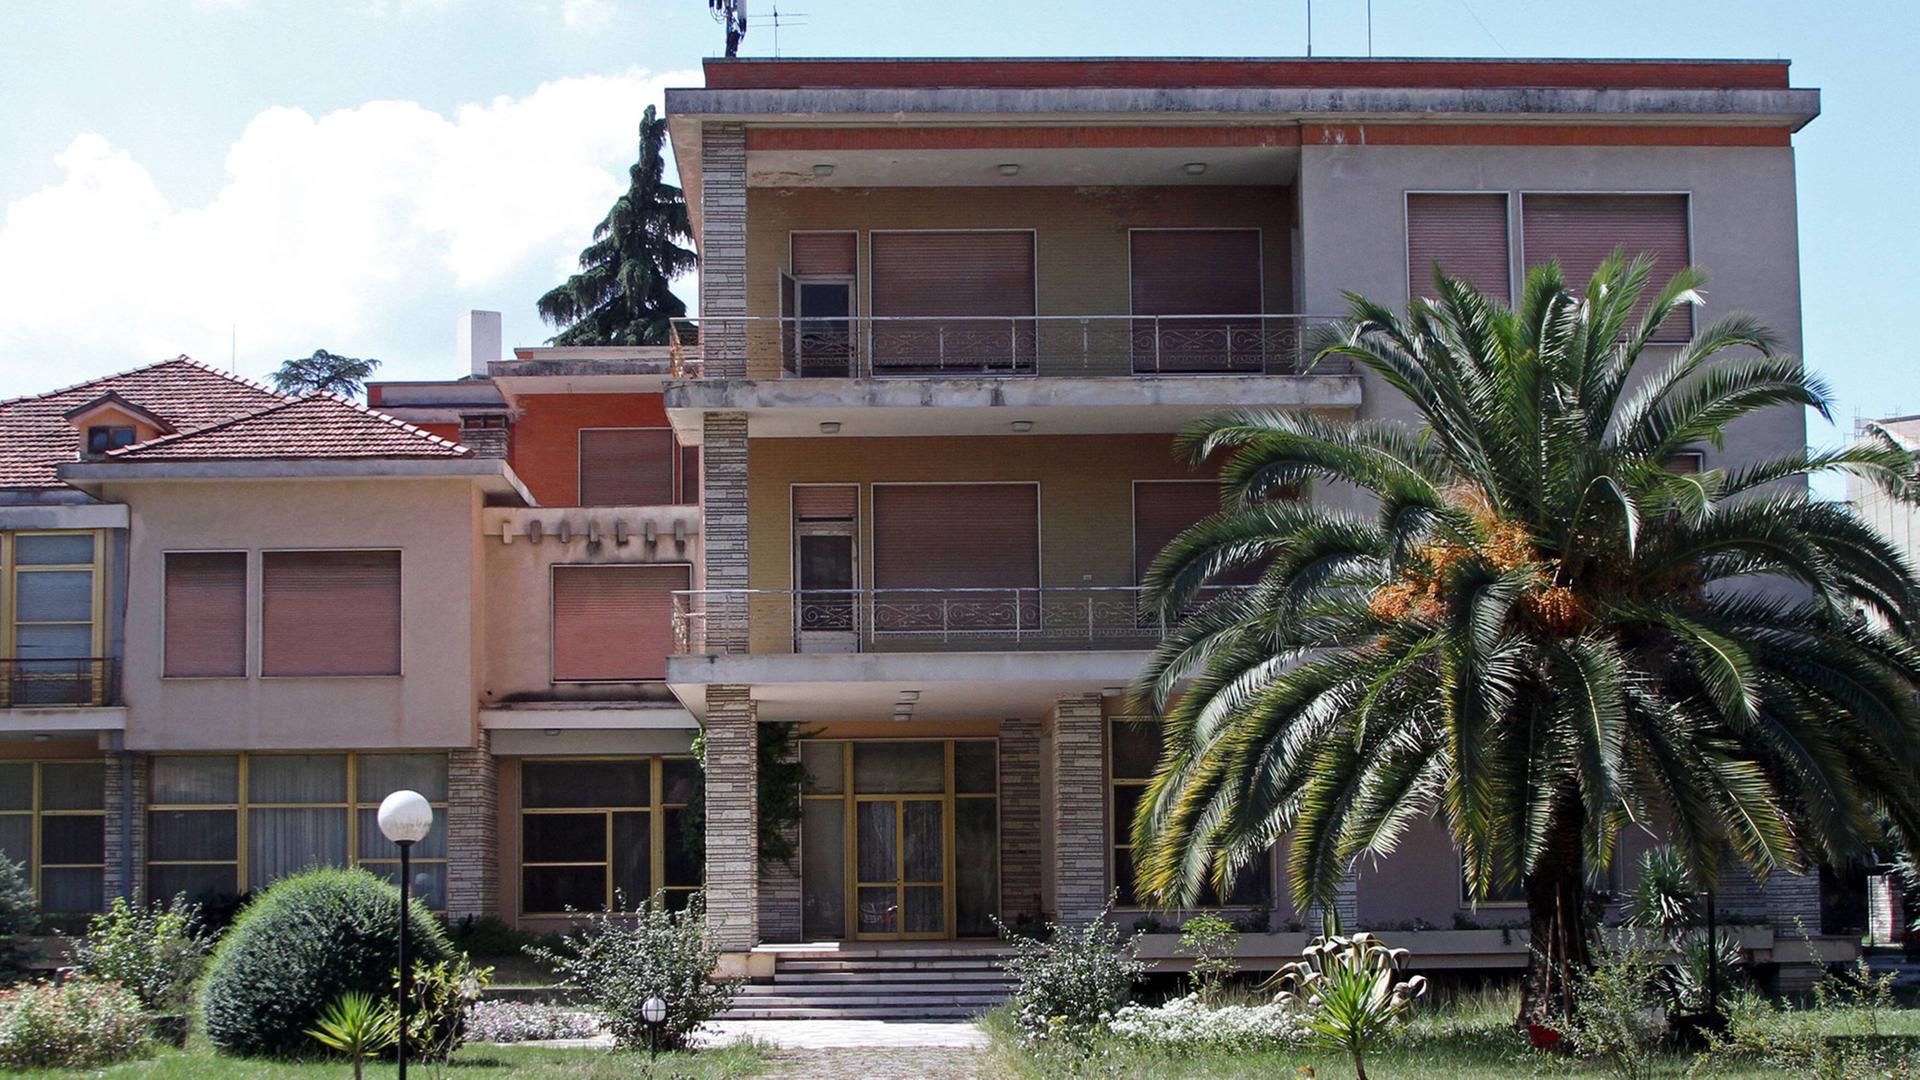 Die Villa des ehemaligen Diktators Enver Hoxha in der albanischen Hauptstadt Tirana, aufgenommen am 6.9.2013